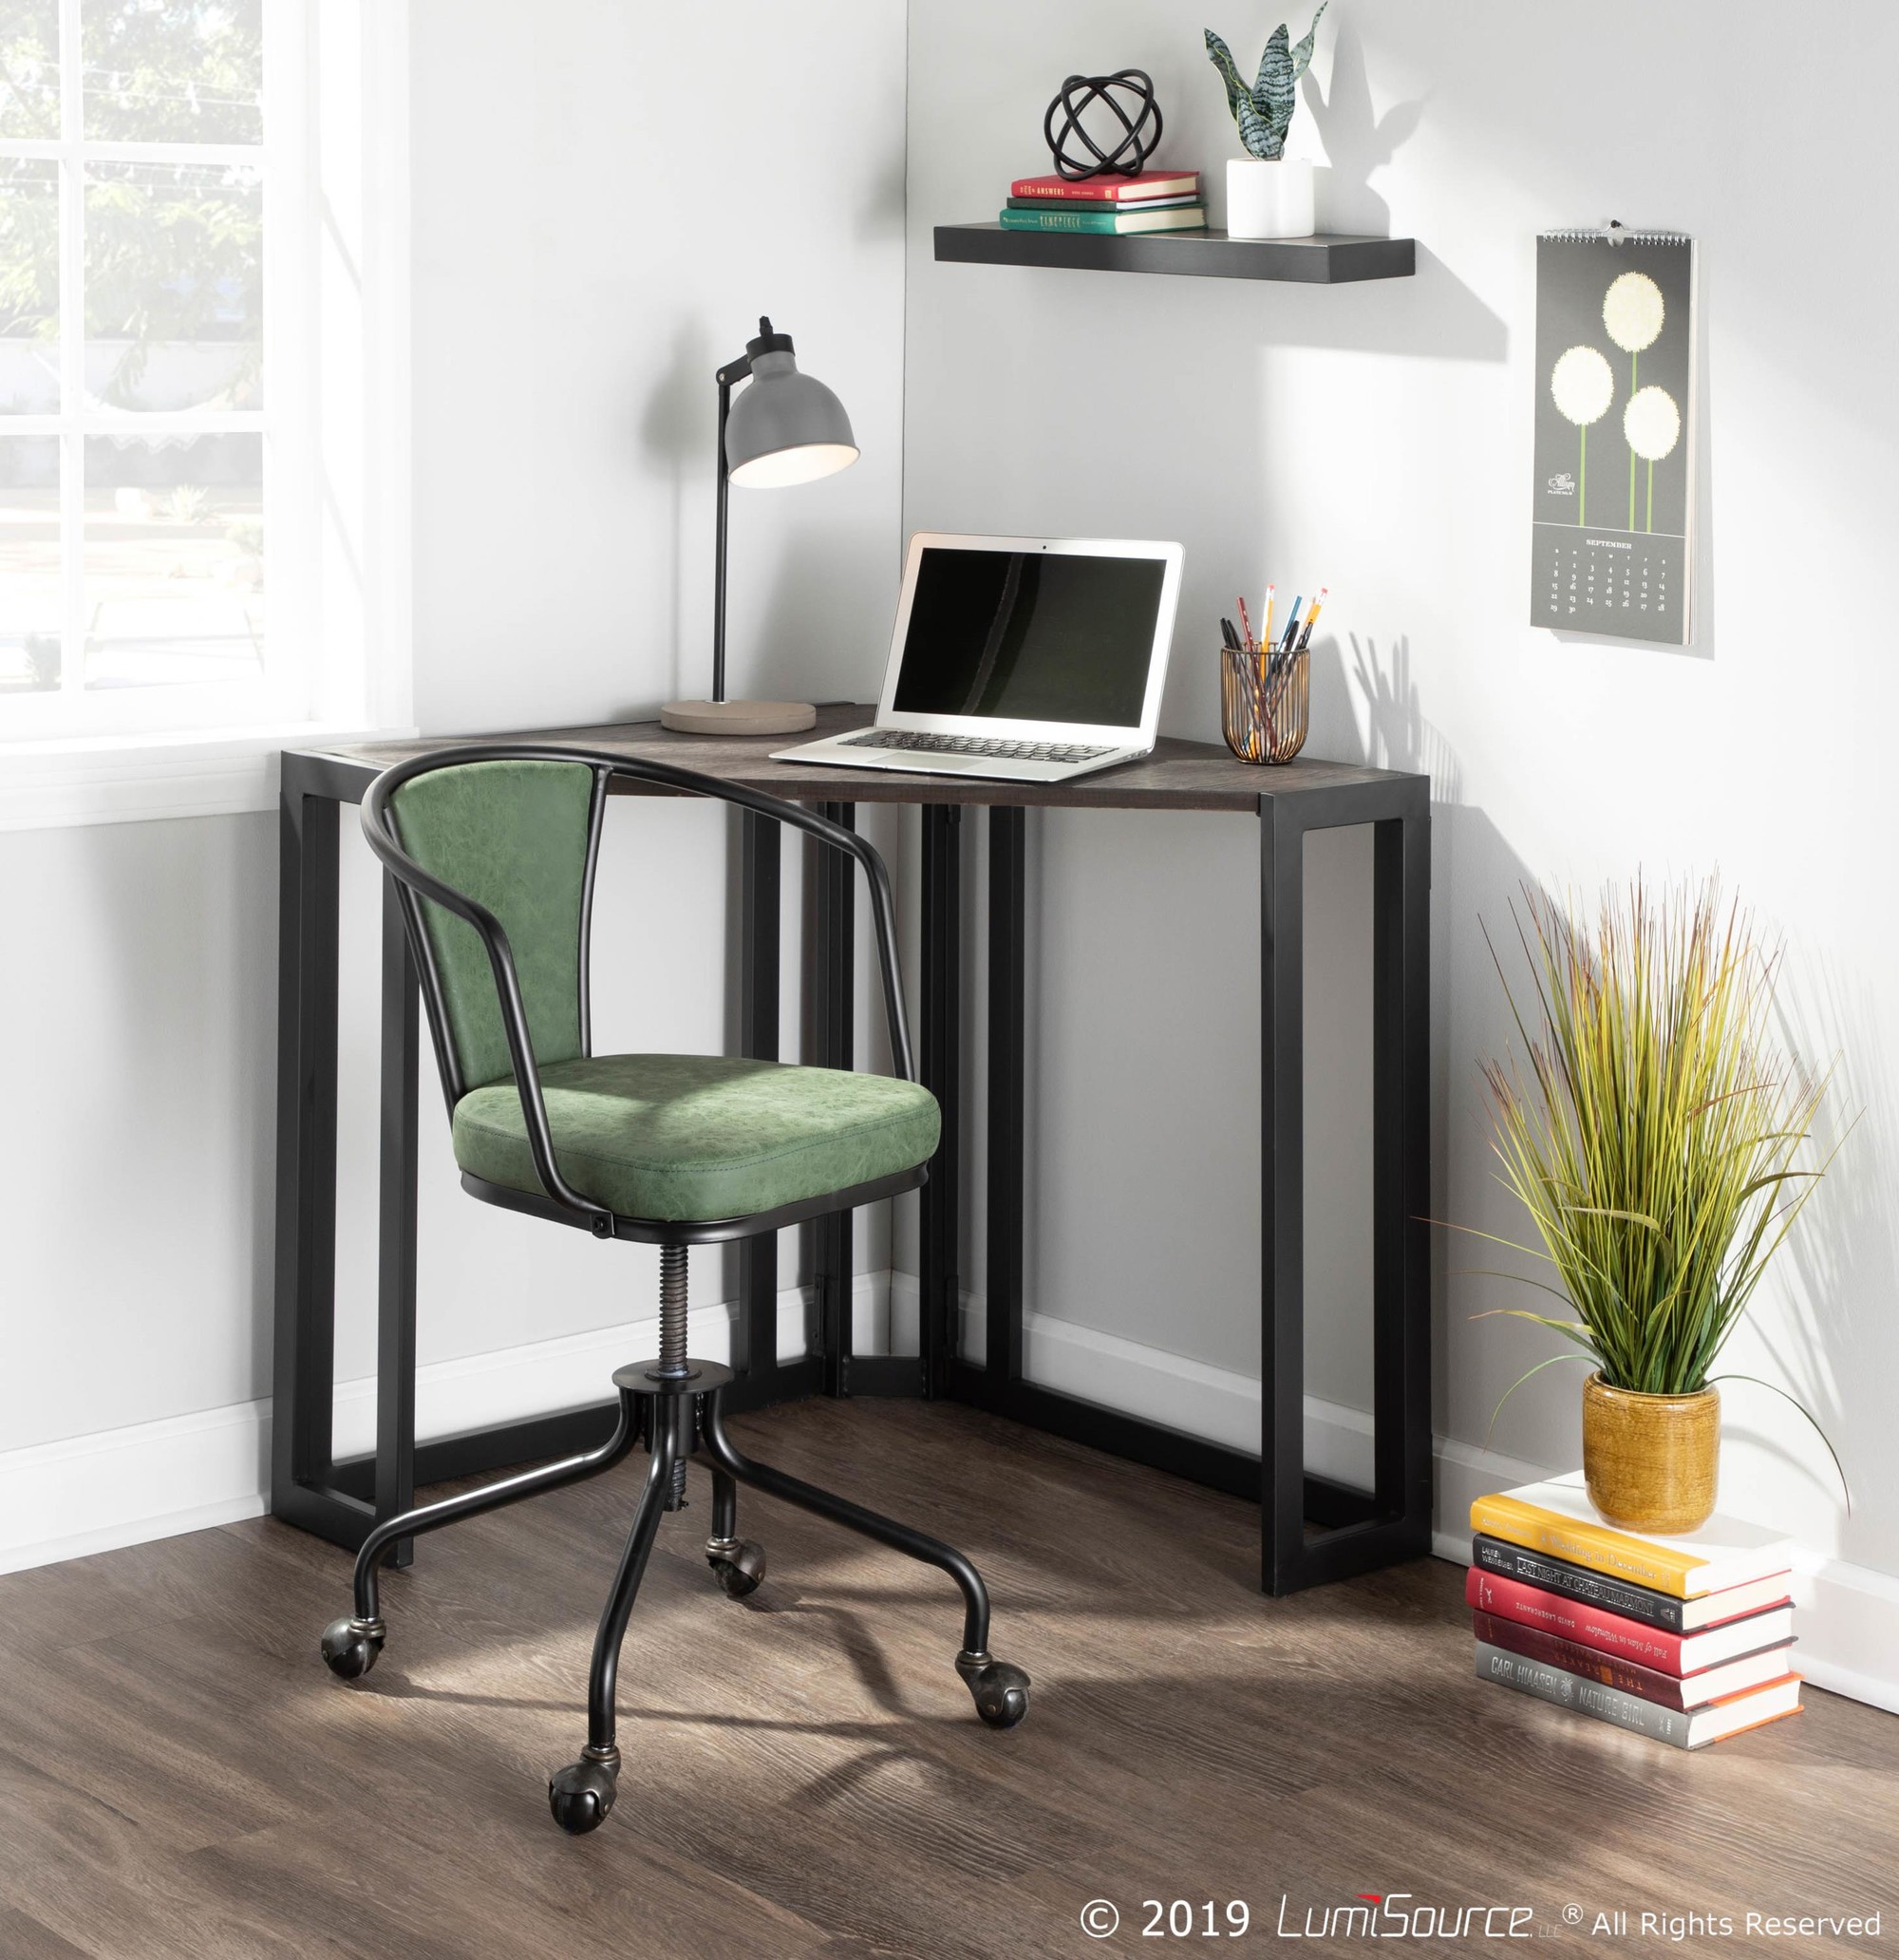 Oregon Upholstered Task Chair